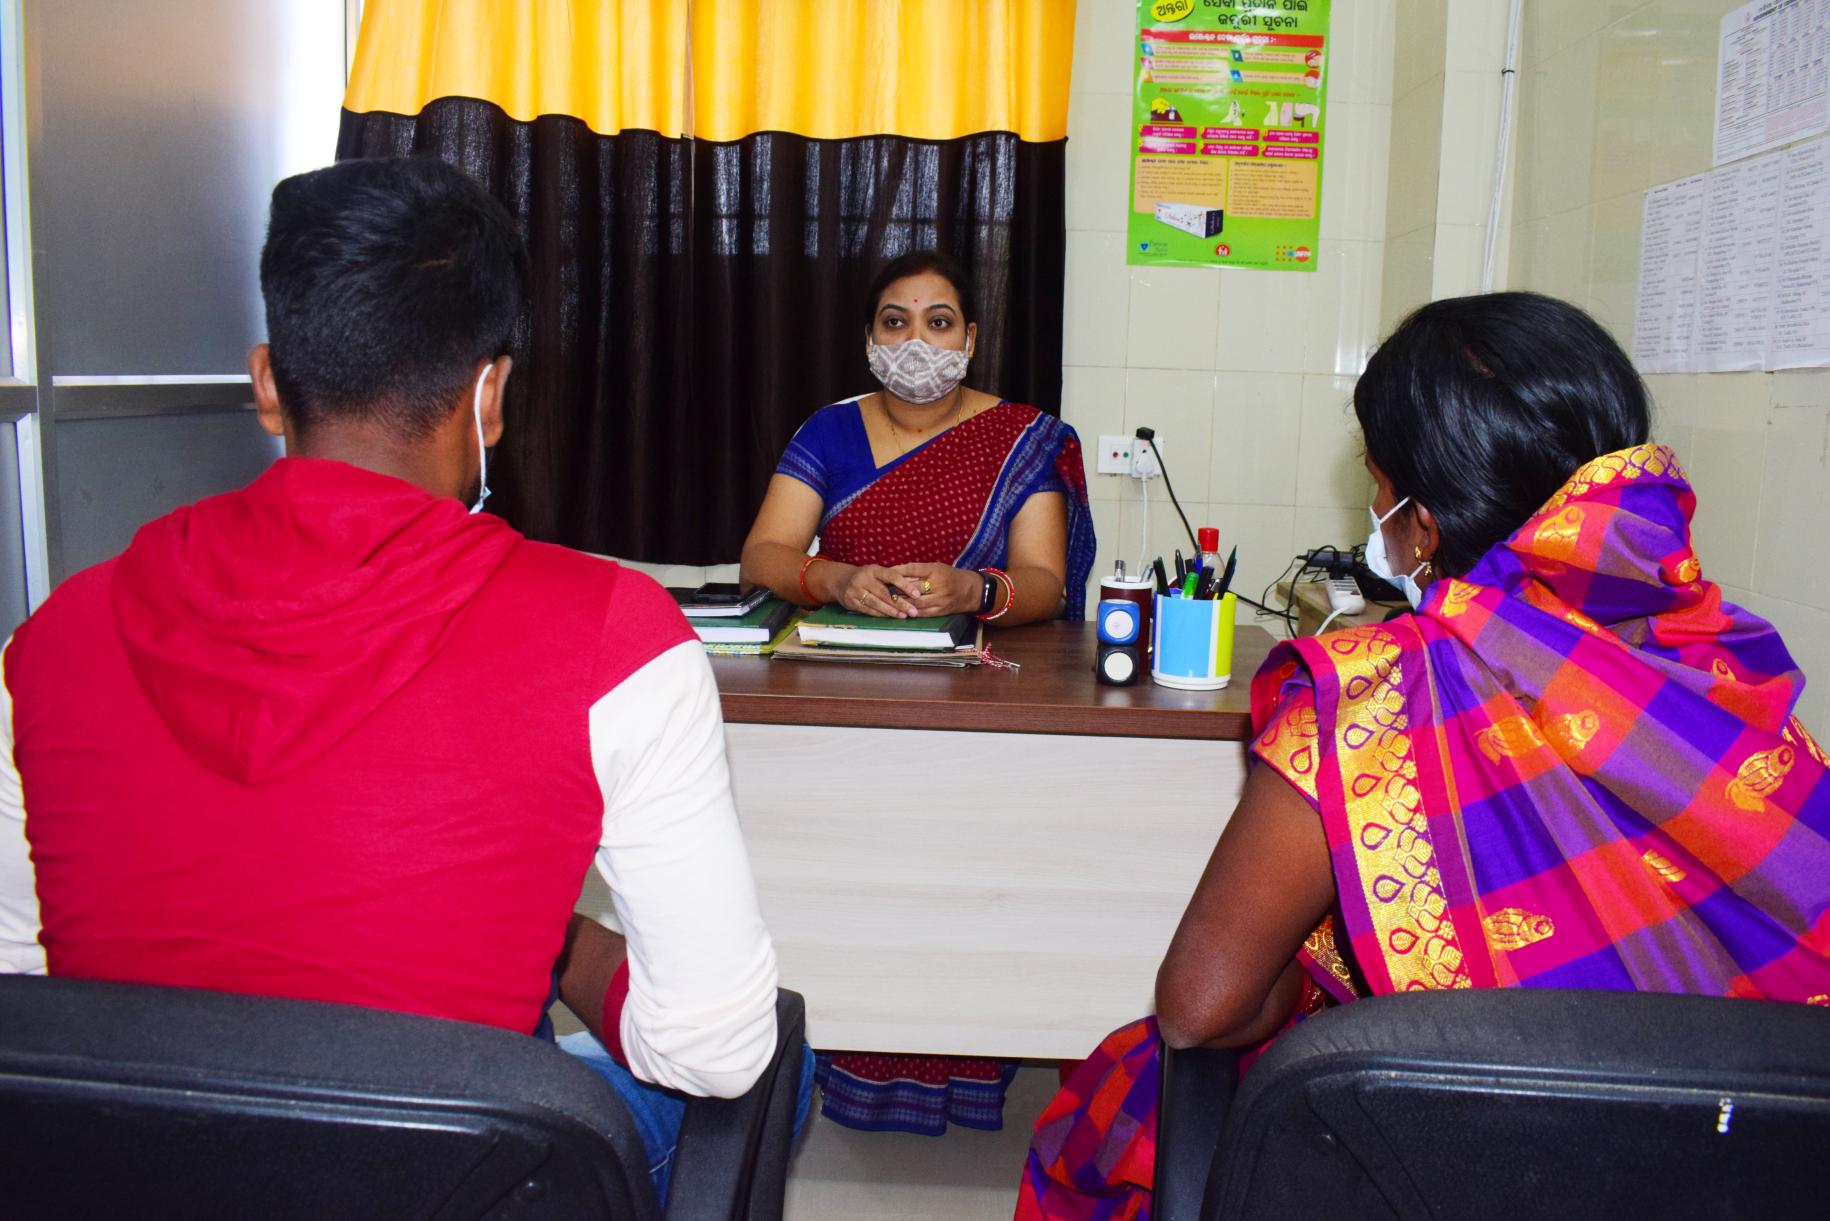 Una de los trabajadores de la salud, capacitados para asesorar, habla con los clientes en su oficina.